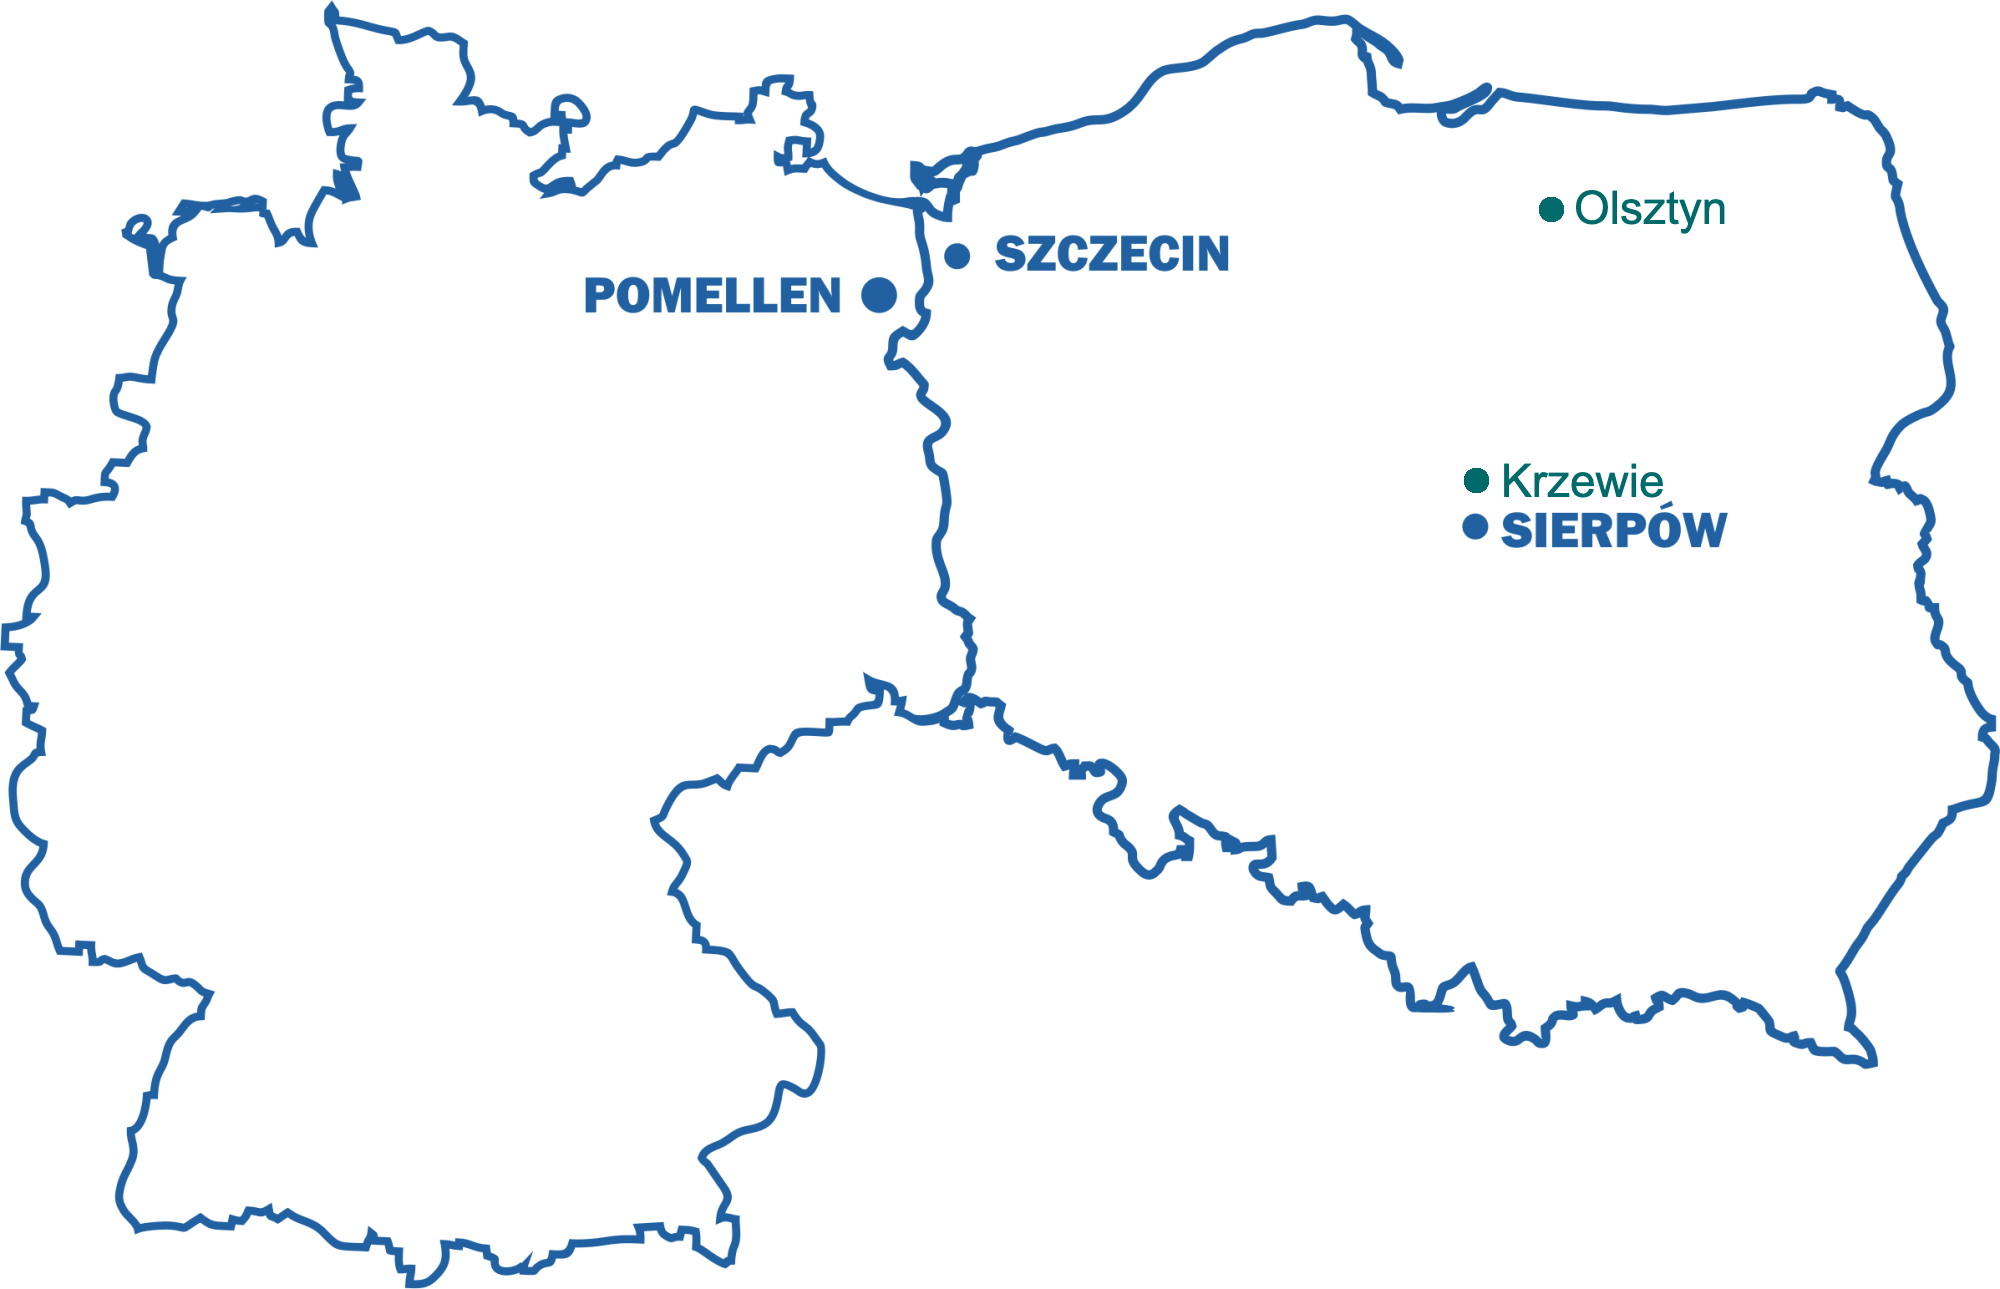 Mapa z zaznaczonymi oddziałami w Sierpowie, Szczecinie i Pomellen, oraz terminalami w Krzewiu i Olsztynie